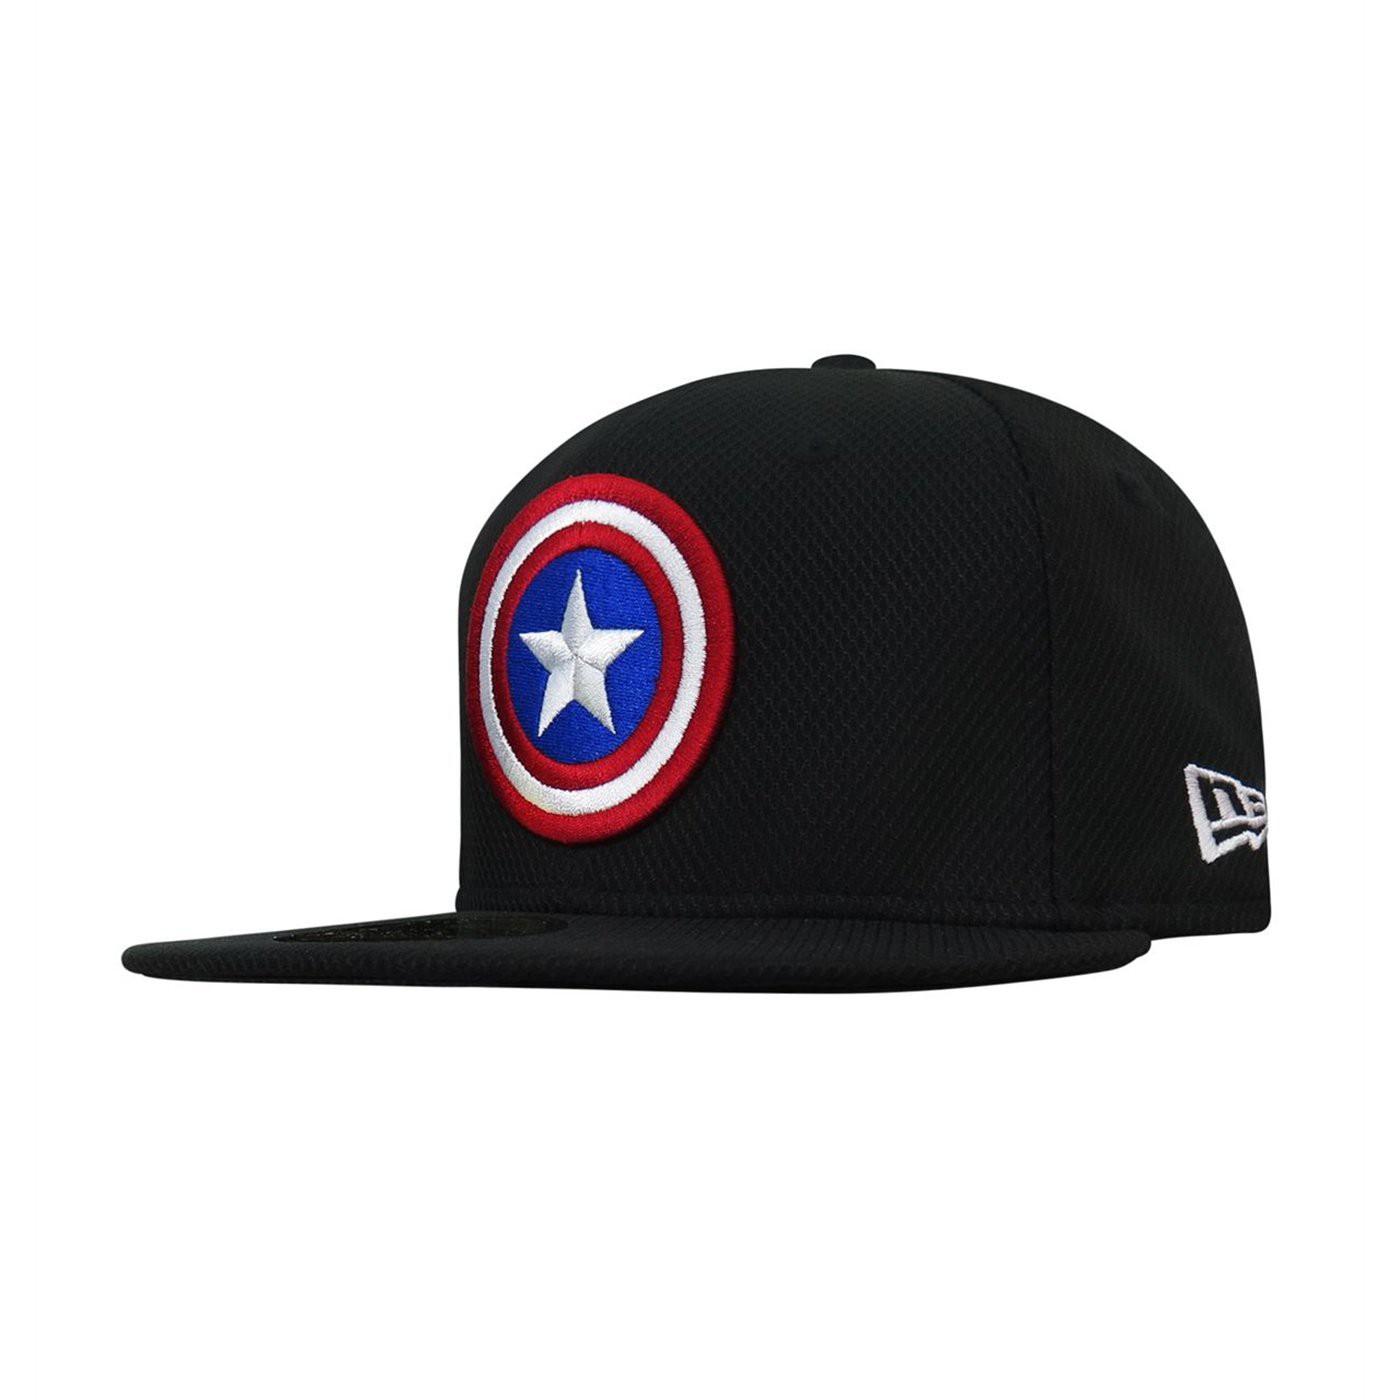 Marvel Captain America Shield Hexshine 5950 Fitted Baseball Cap 